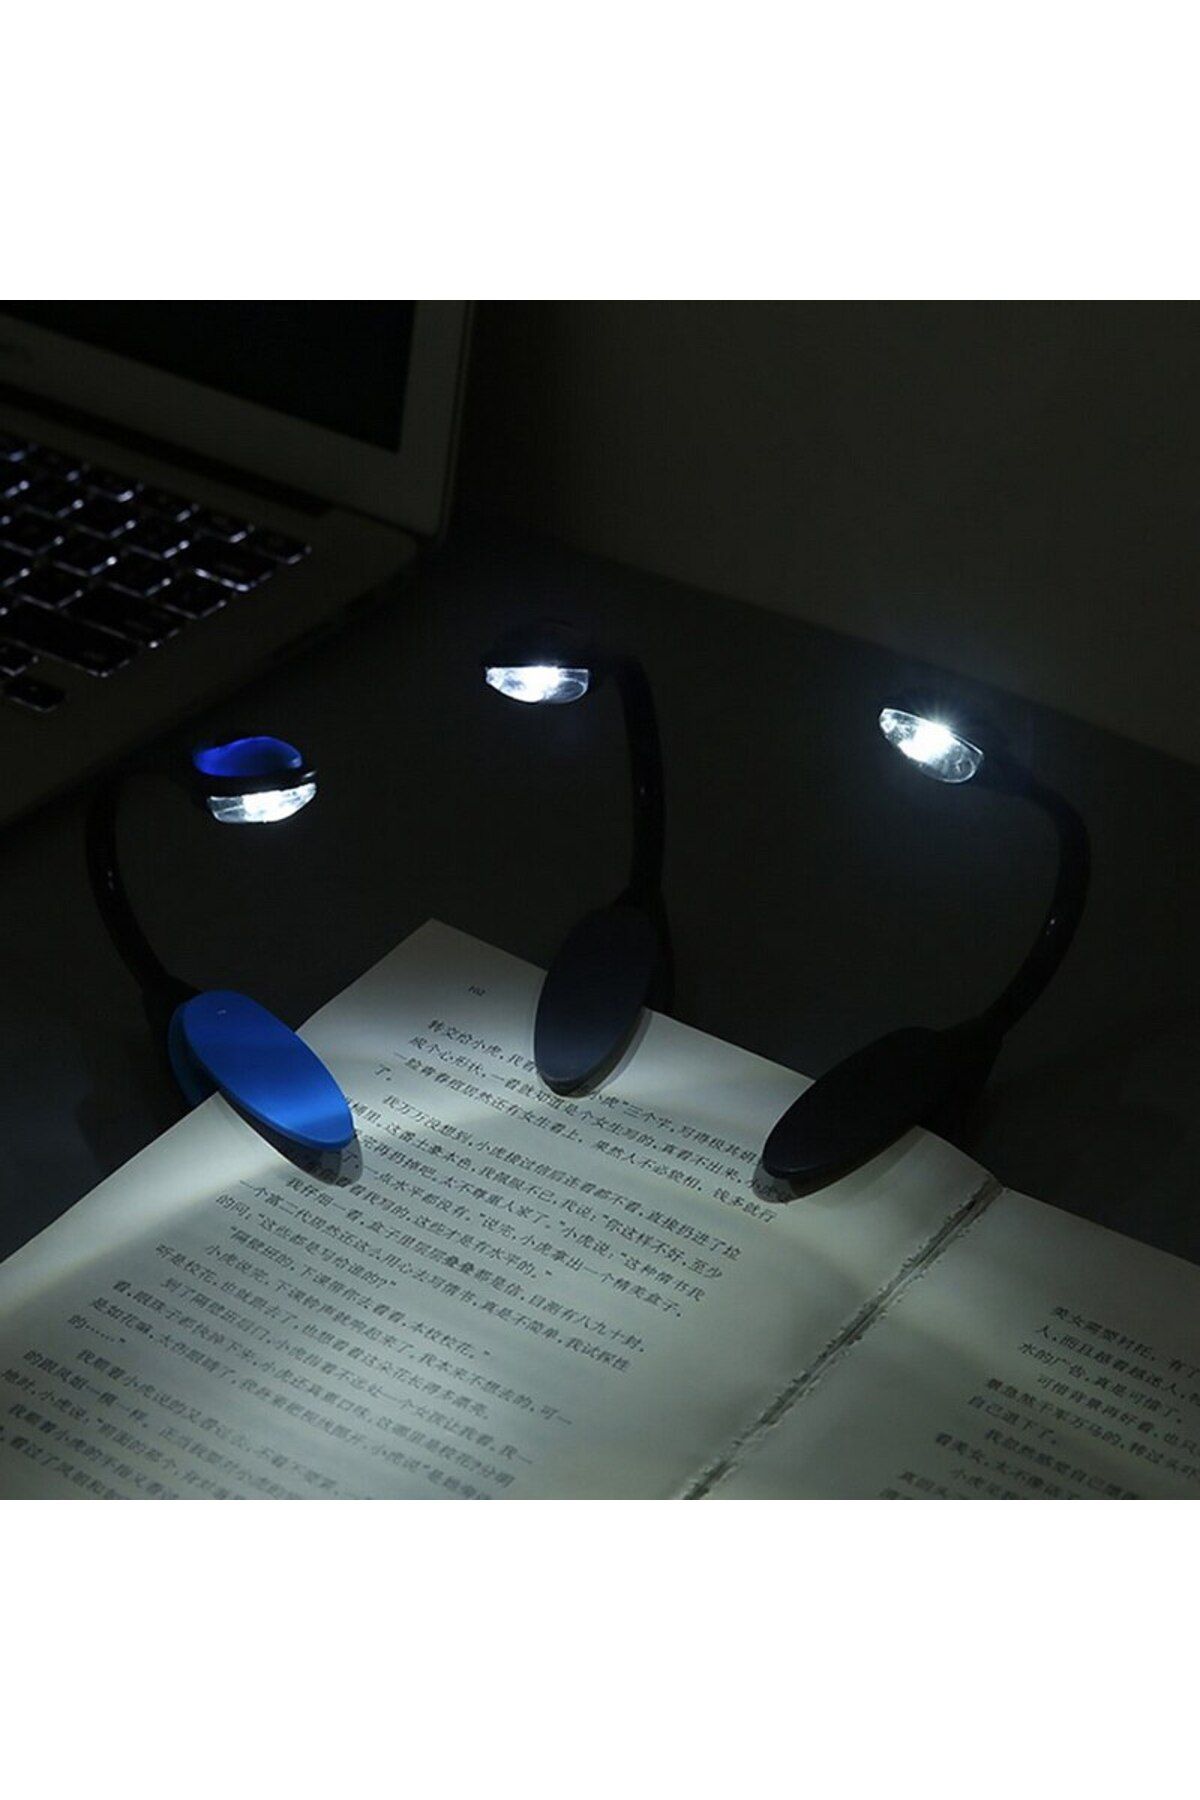 Go İthalat Kitap Okuma Işığı Led Booklight Kıskaçlı Pilli Model Led Işık (4130)